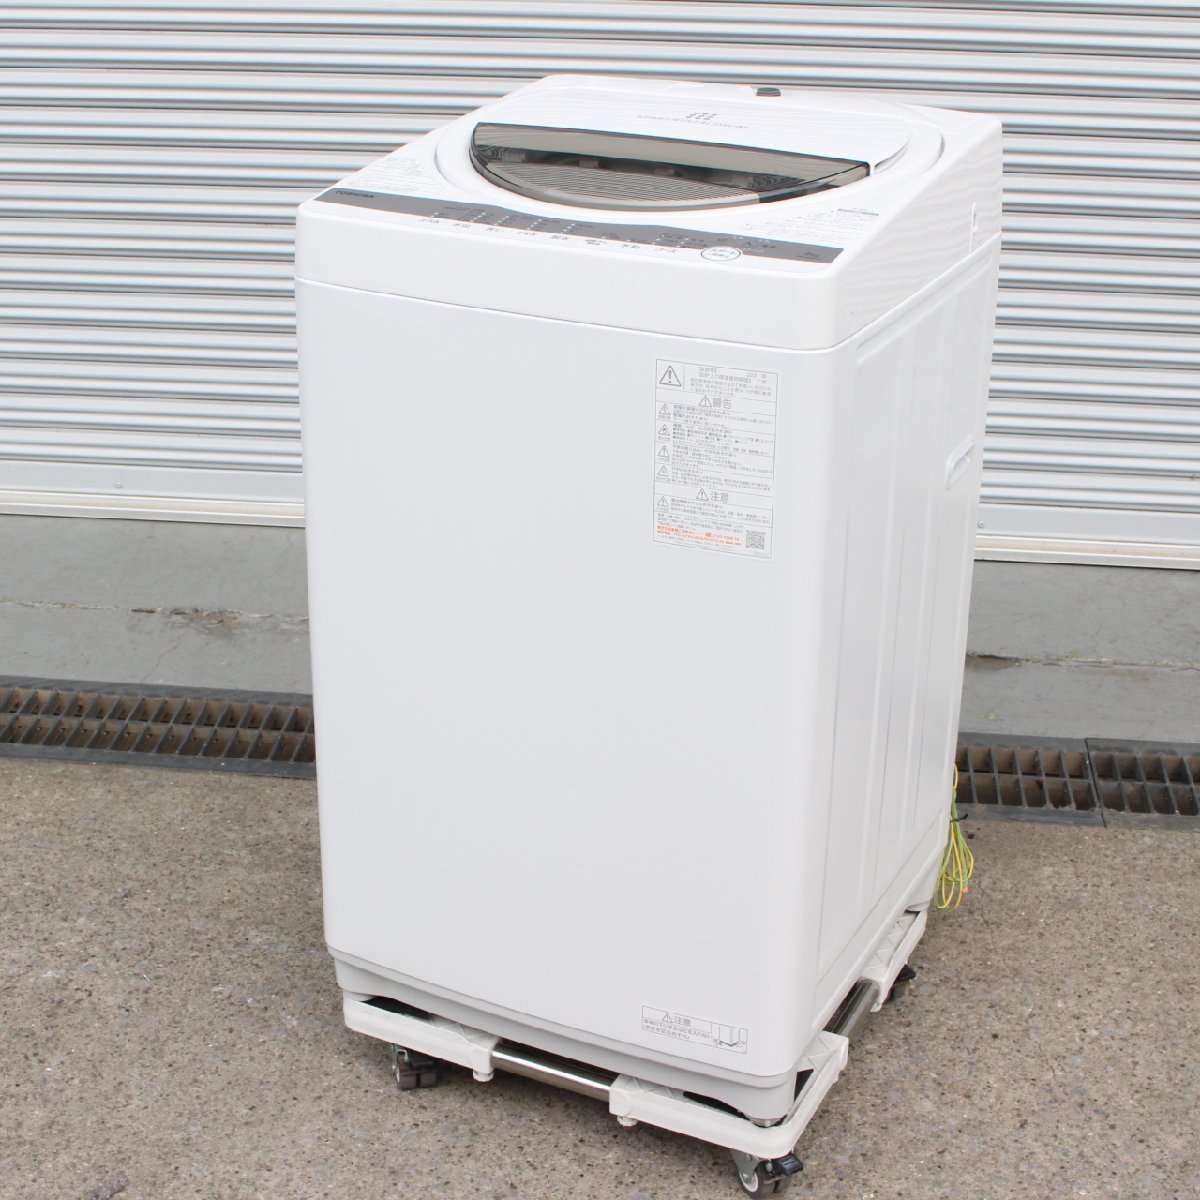 東京都目黒区にて 東芝 全自動洗濯機 AW-6G9 6kg 2021年製 を出張買取させて頂きました。